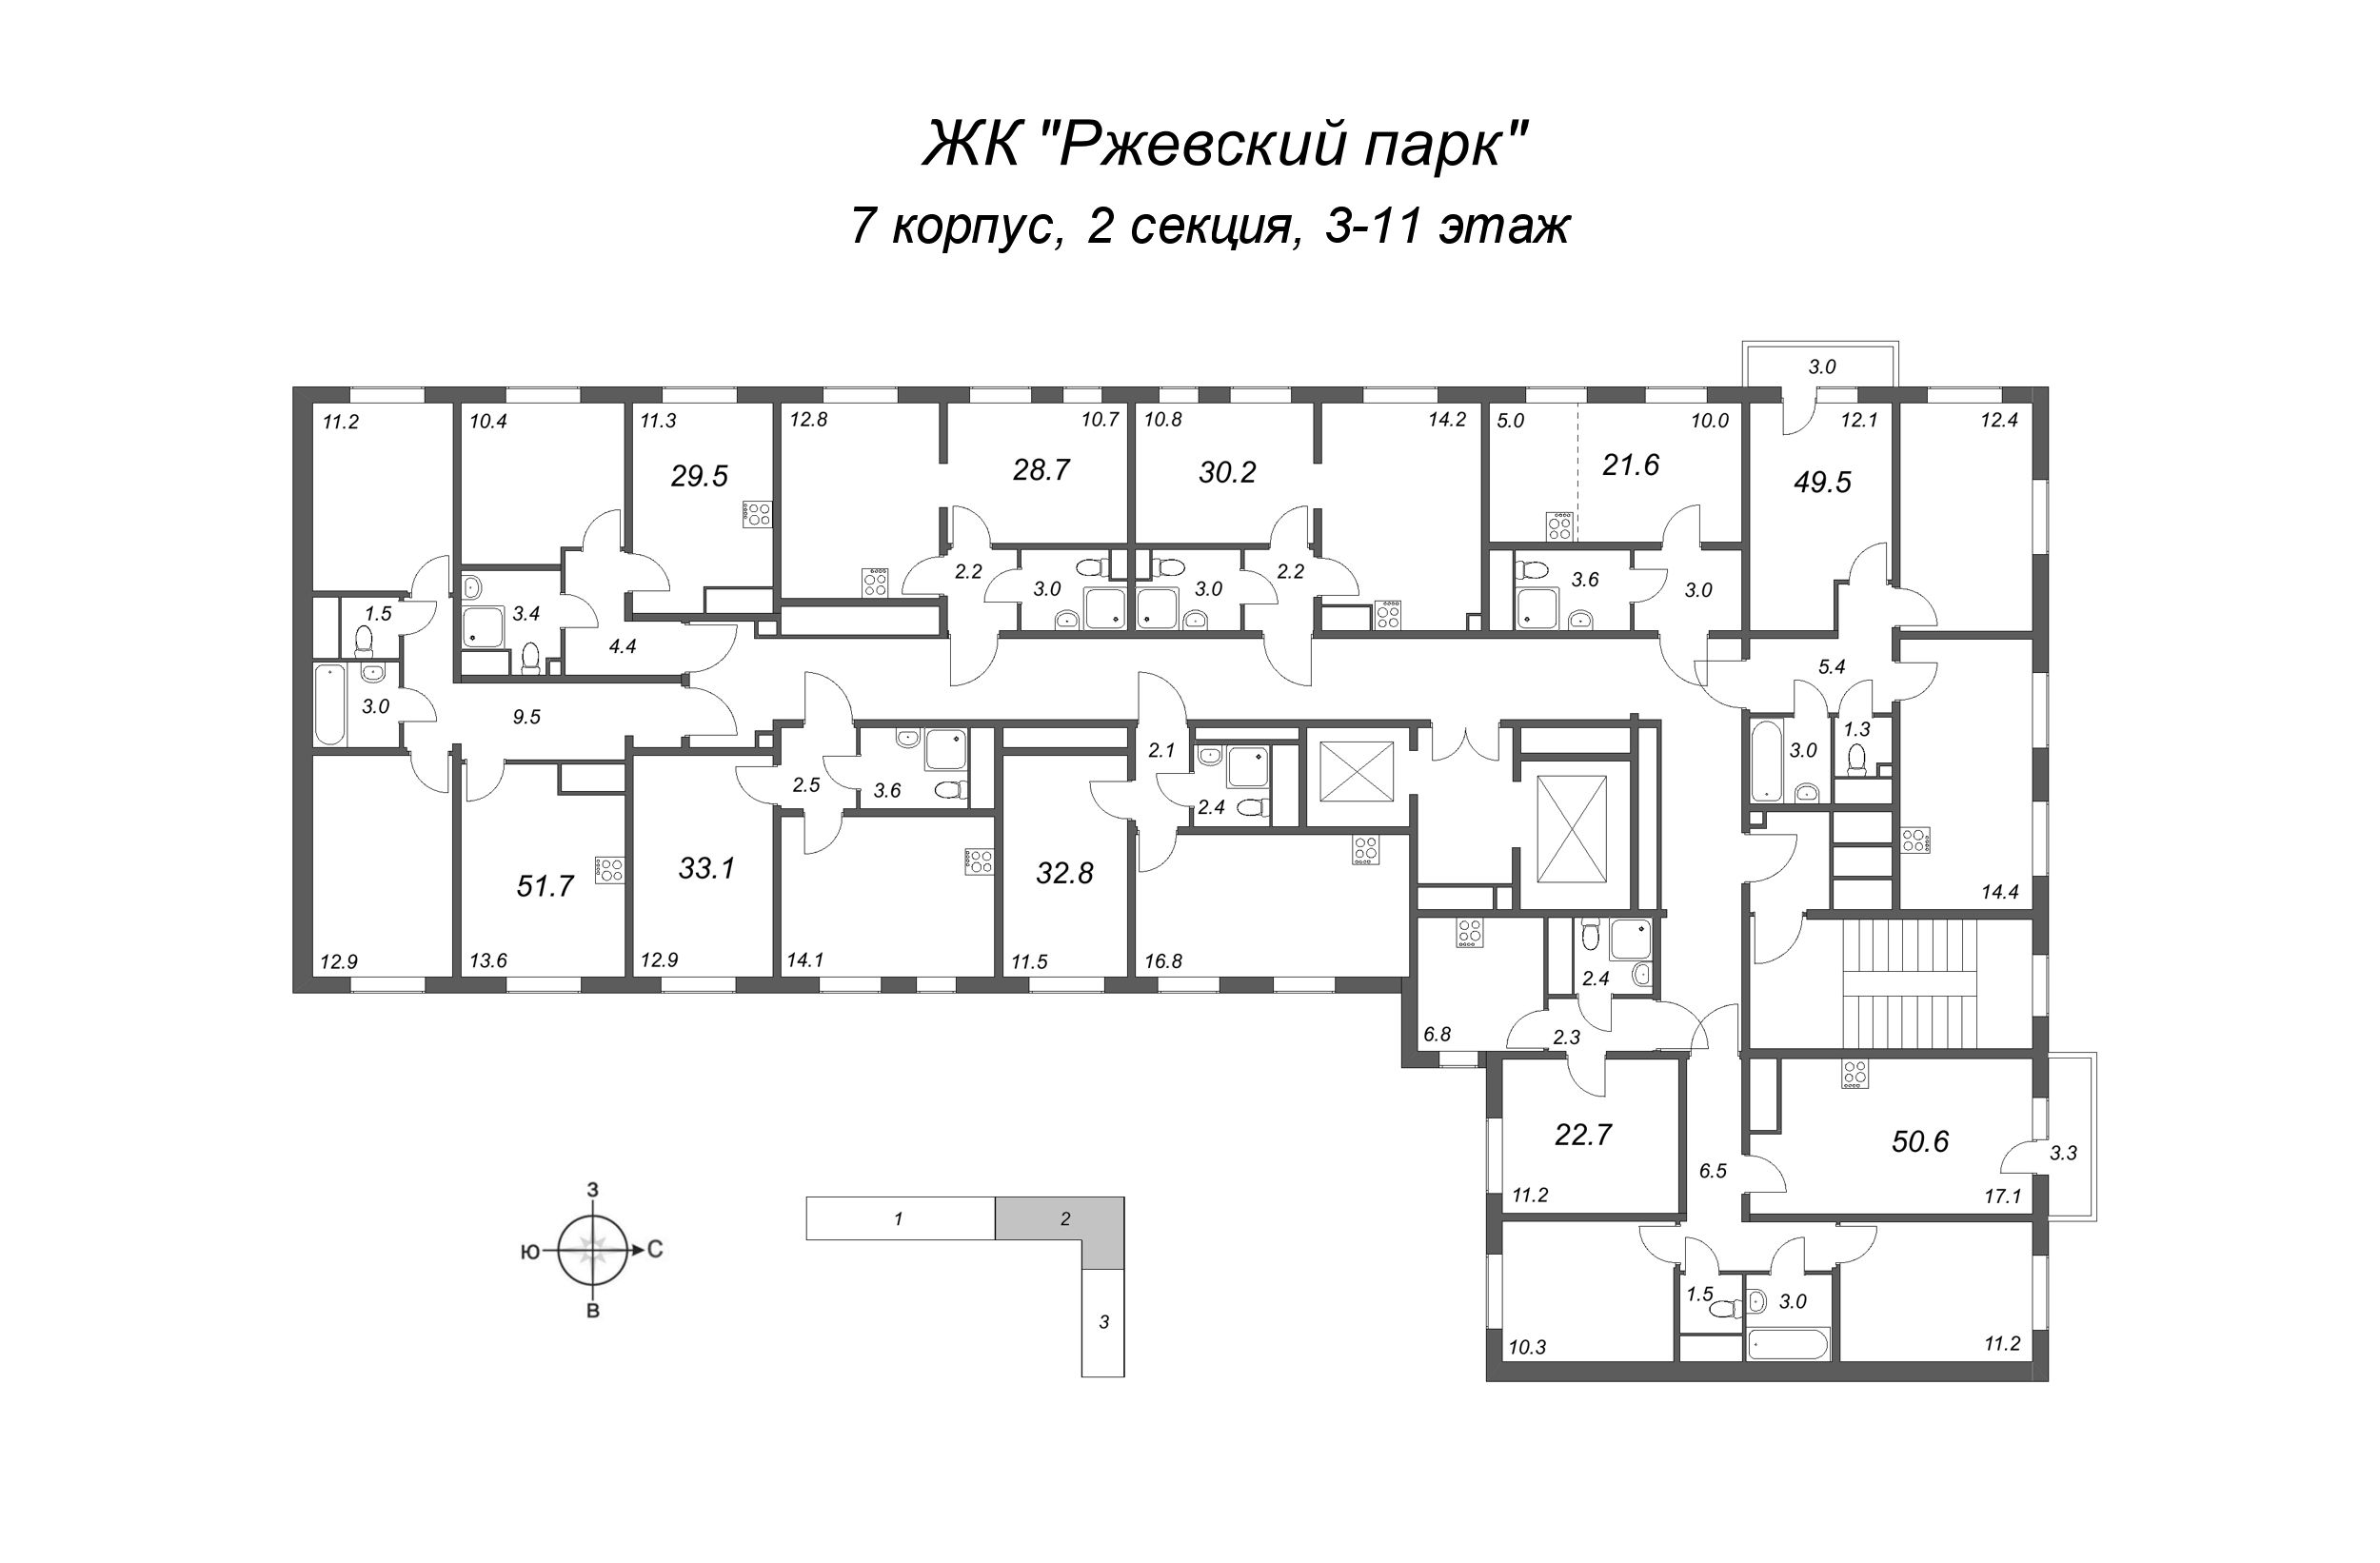 2-комнатная квартира, 49.5 м² в ЖК "ЛСР. Ржевский парк" - планировка этажа